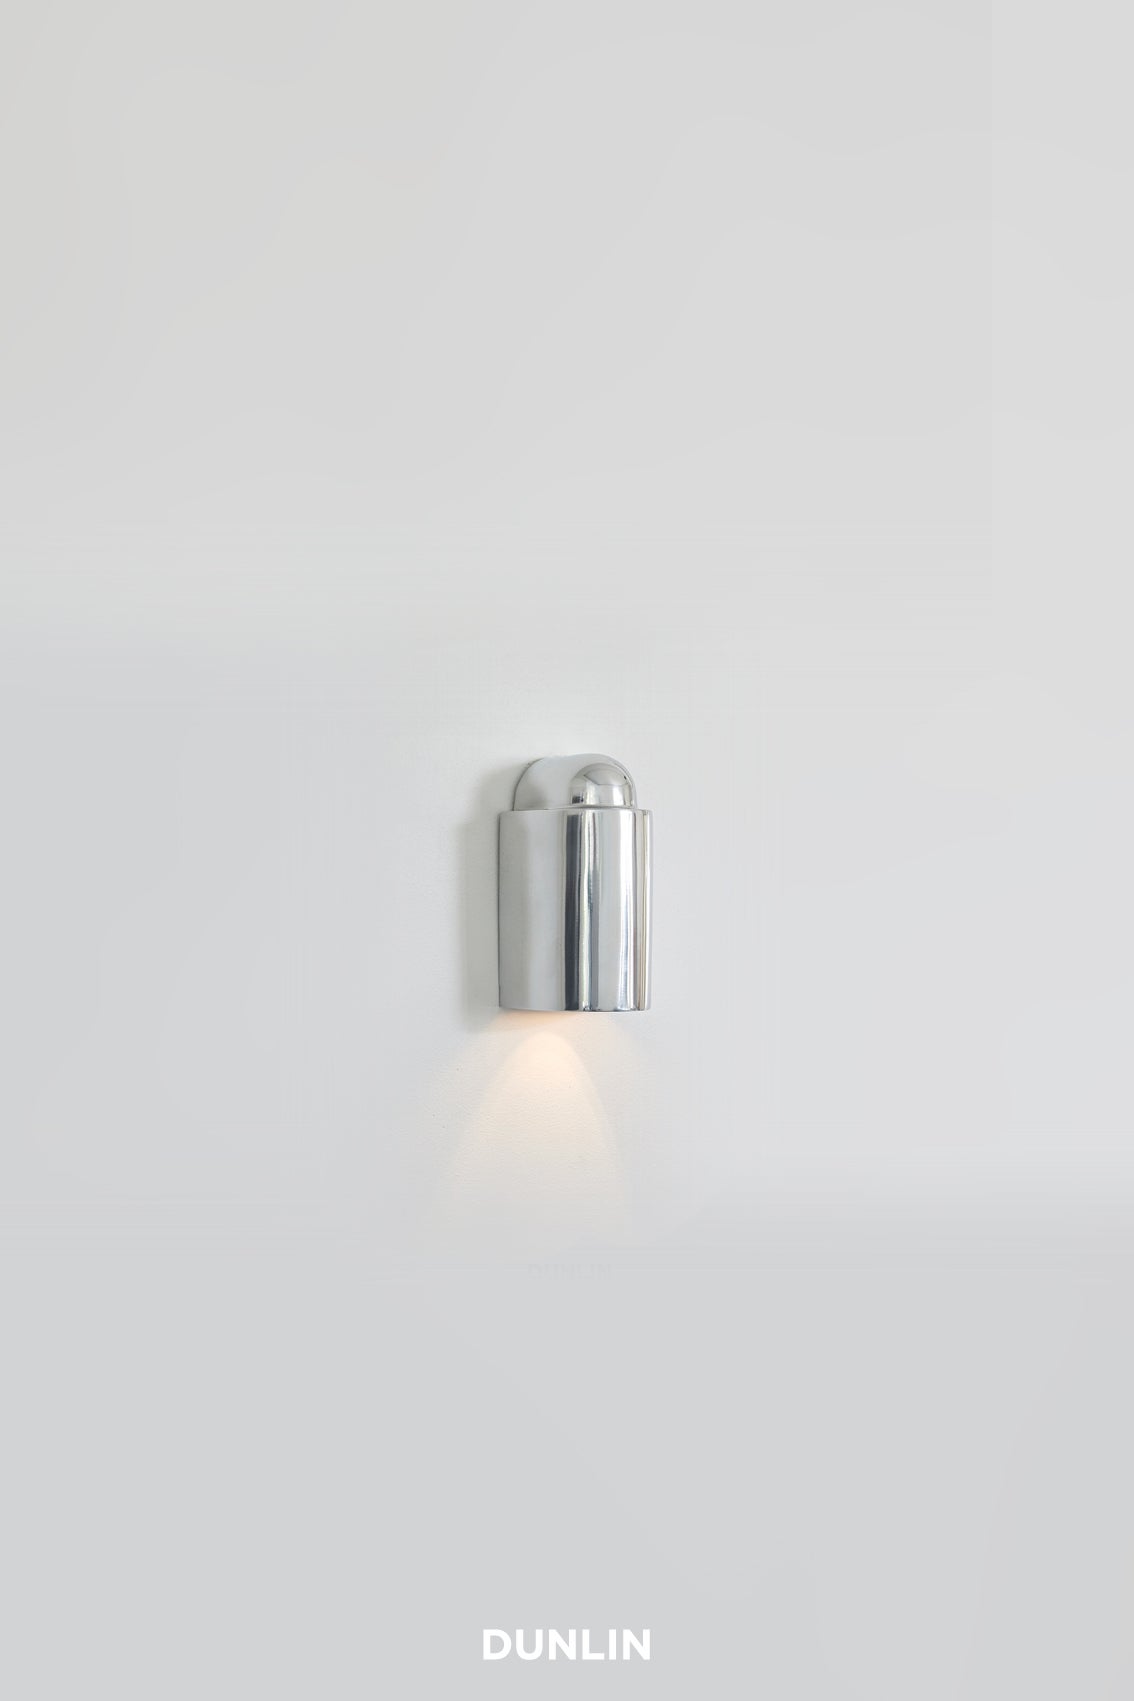 
Wir stellen die Decade Mini Stufenleuchte vor: Die in Sydney, Australien, von Dunlin entworfene Decade Mini Wall Light ist der Inbegriff von Raffinesse und eine hervorragende Option für die Beleuchtung von Treppen. Ihre robuste Bauweise garantiert